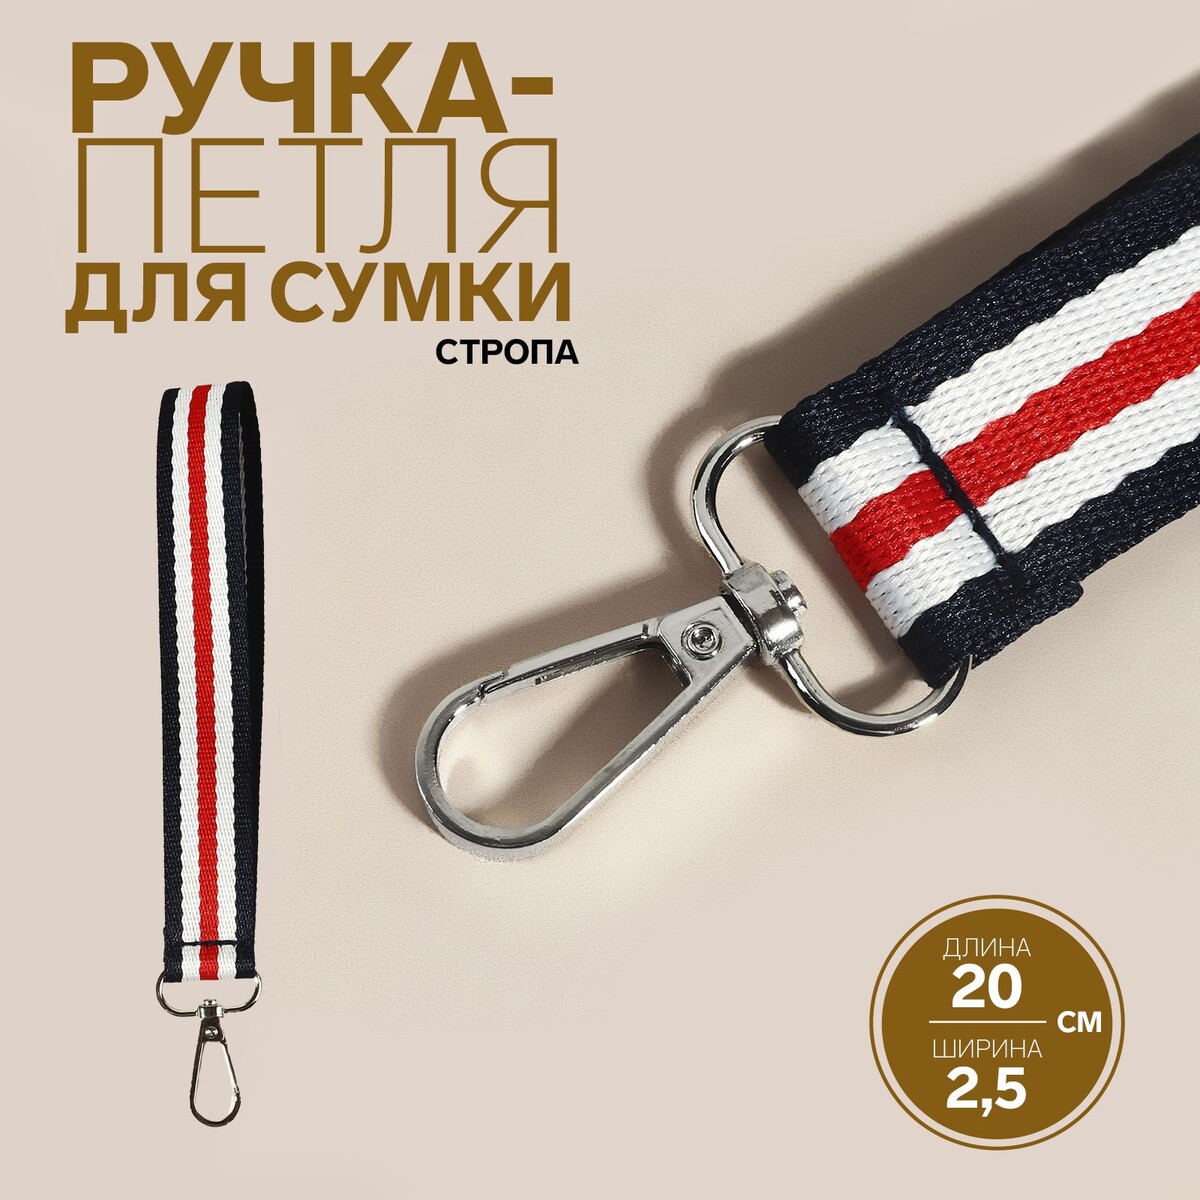 Ручка-петля для сумки, стропа, 20 × 2,5 см, цвет синий/белый/красный петля для сыщика